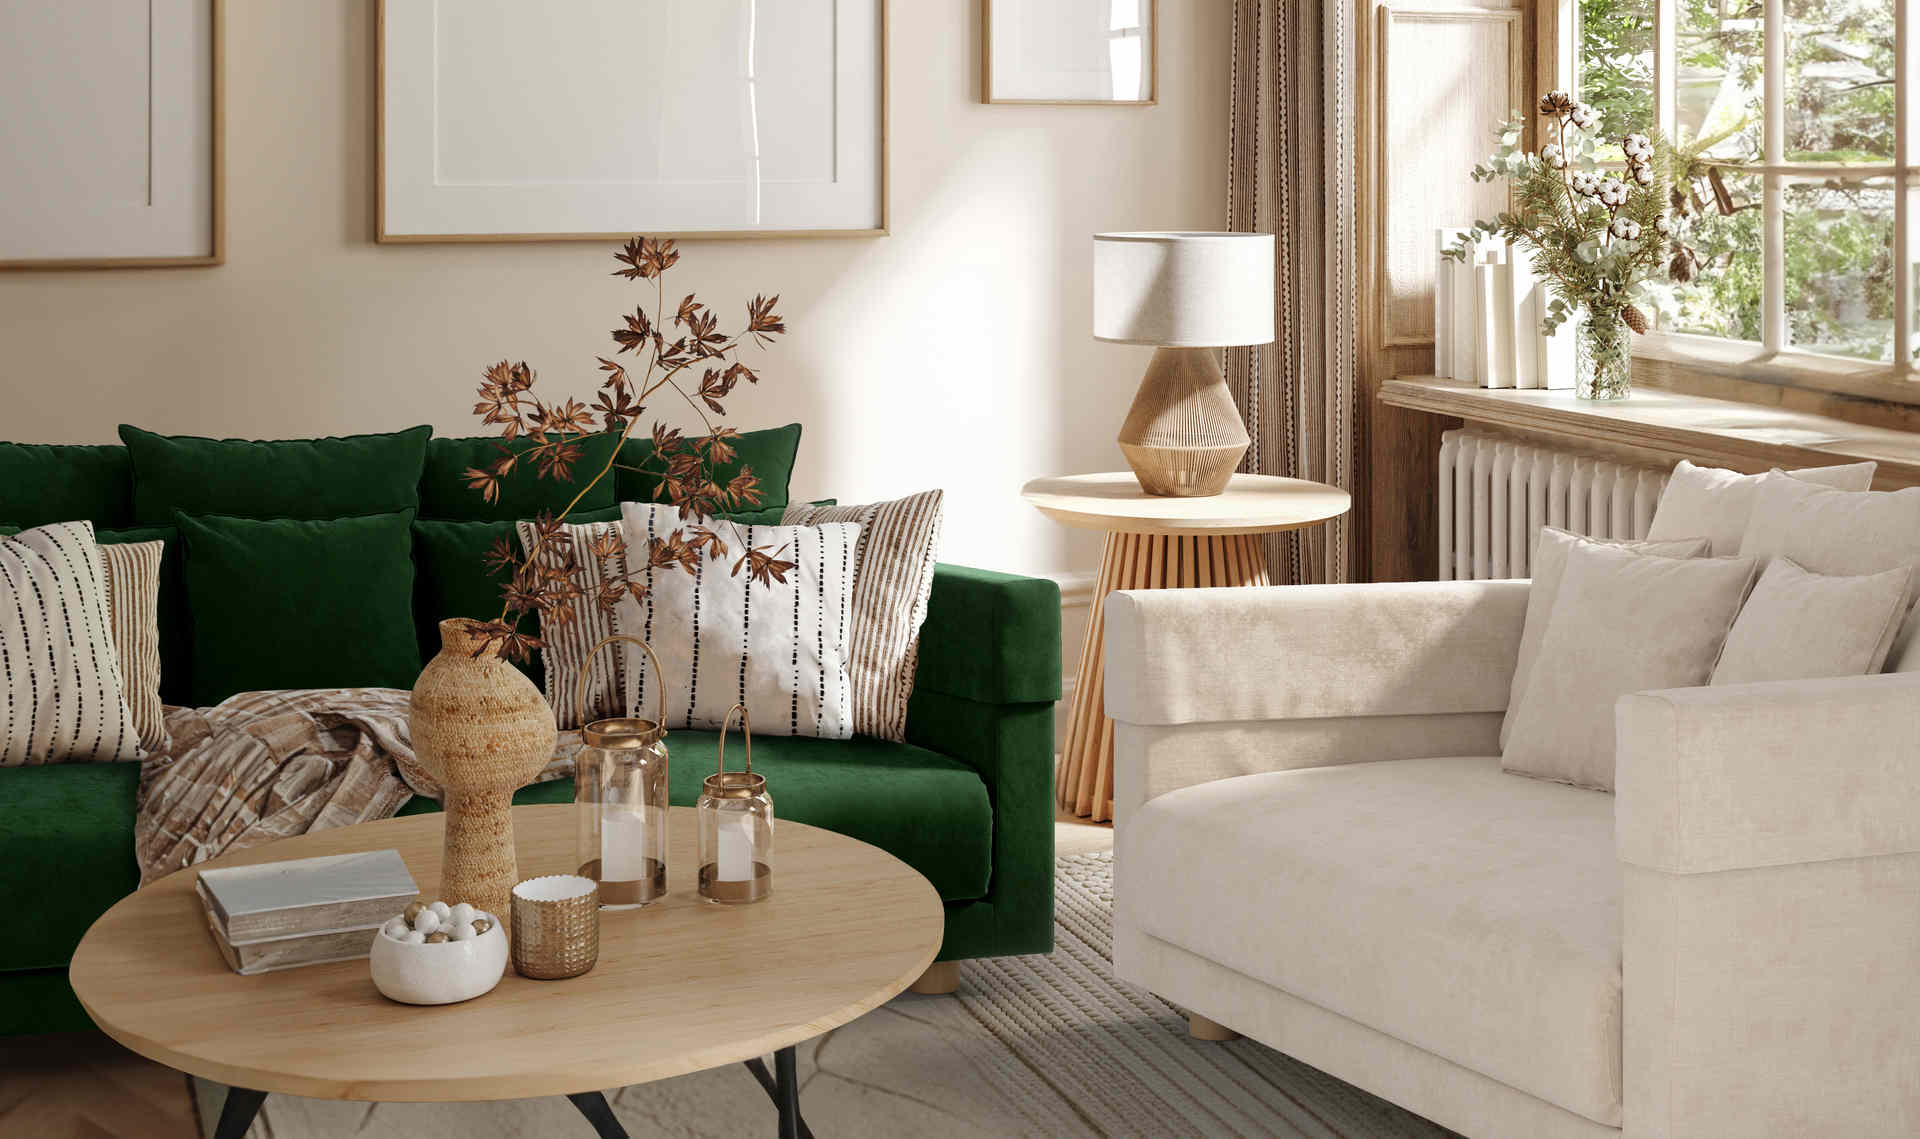 Nordic living room velvet throw pillow sofa back pillow office